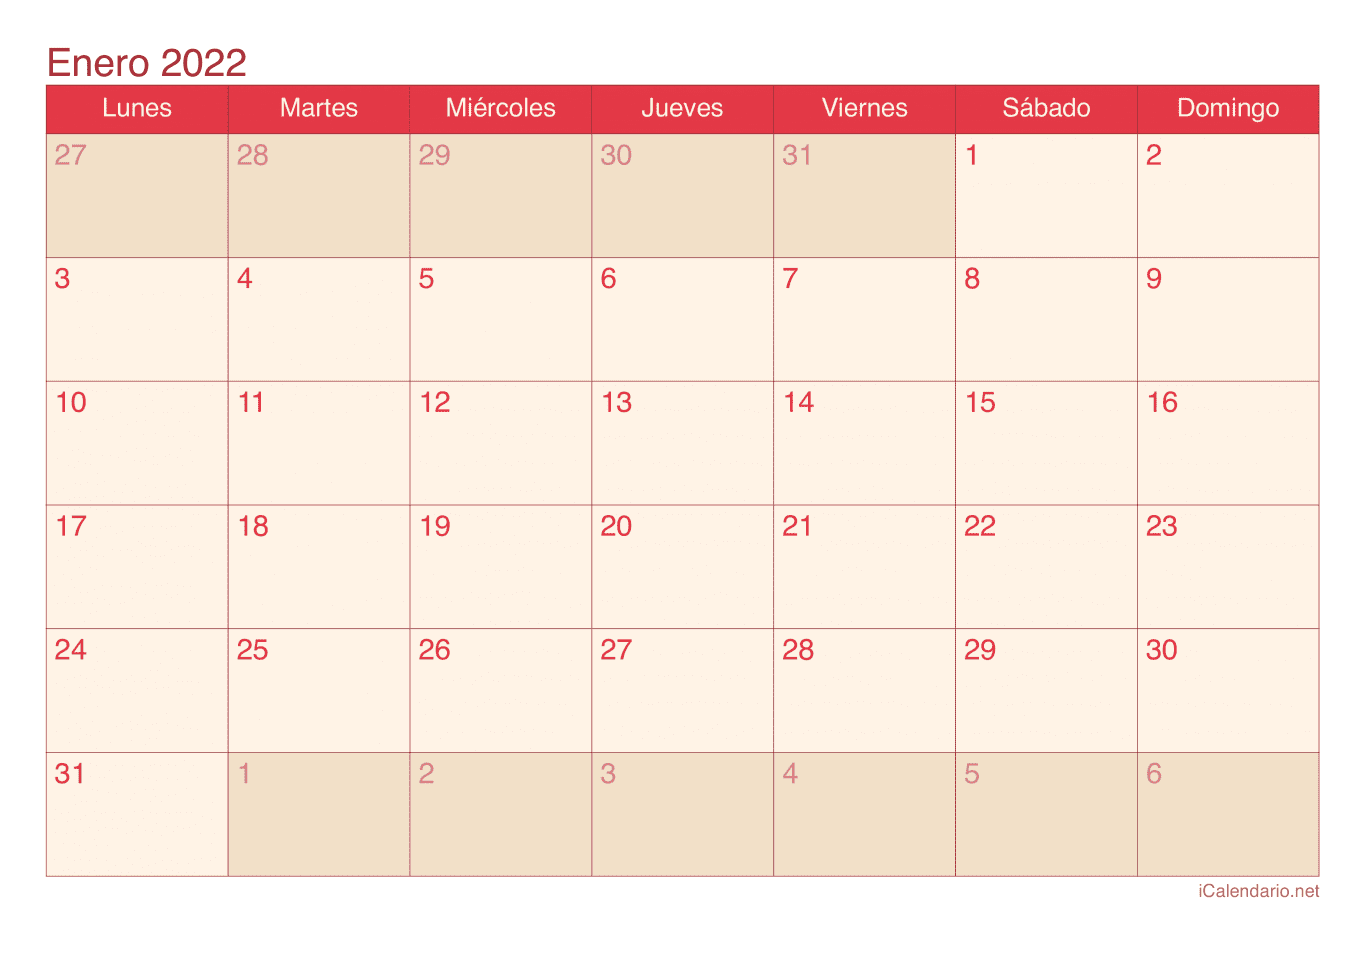 Calendario de enero 2022 - Cherry